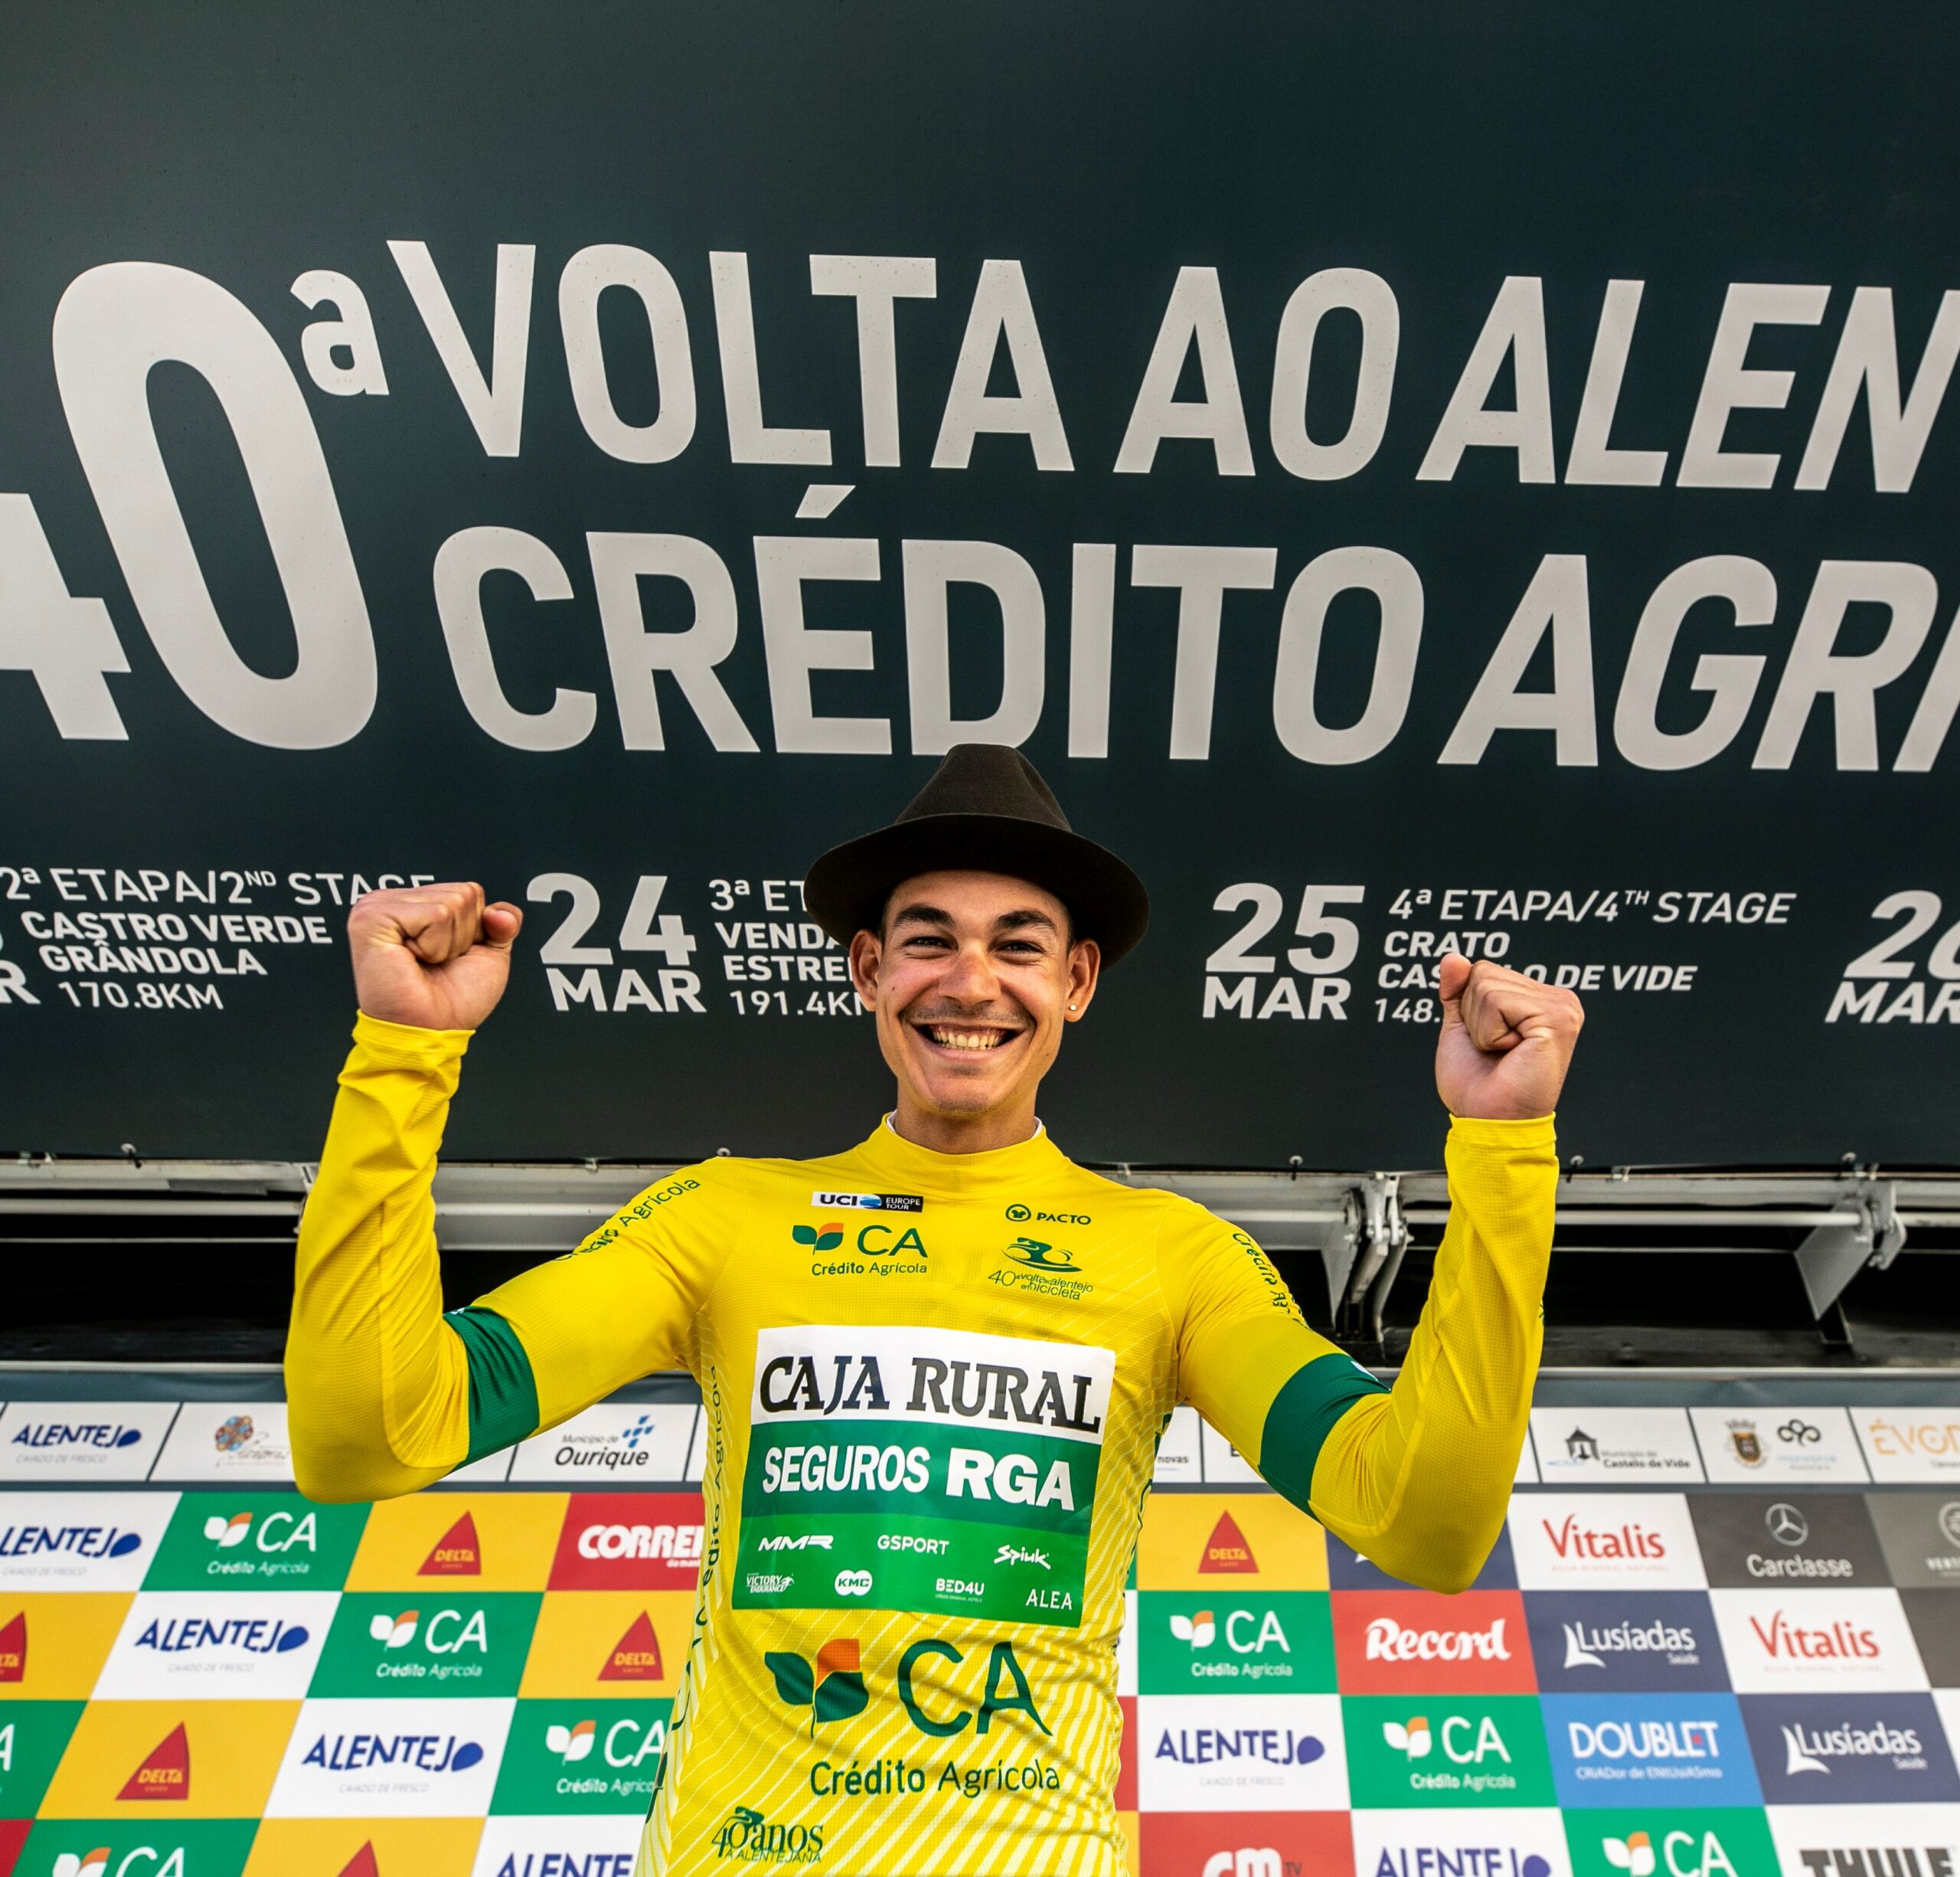 Орлуис Аулар второй год подряд выигрывает велогонку «Вольта Алентежу»